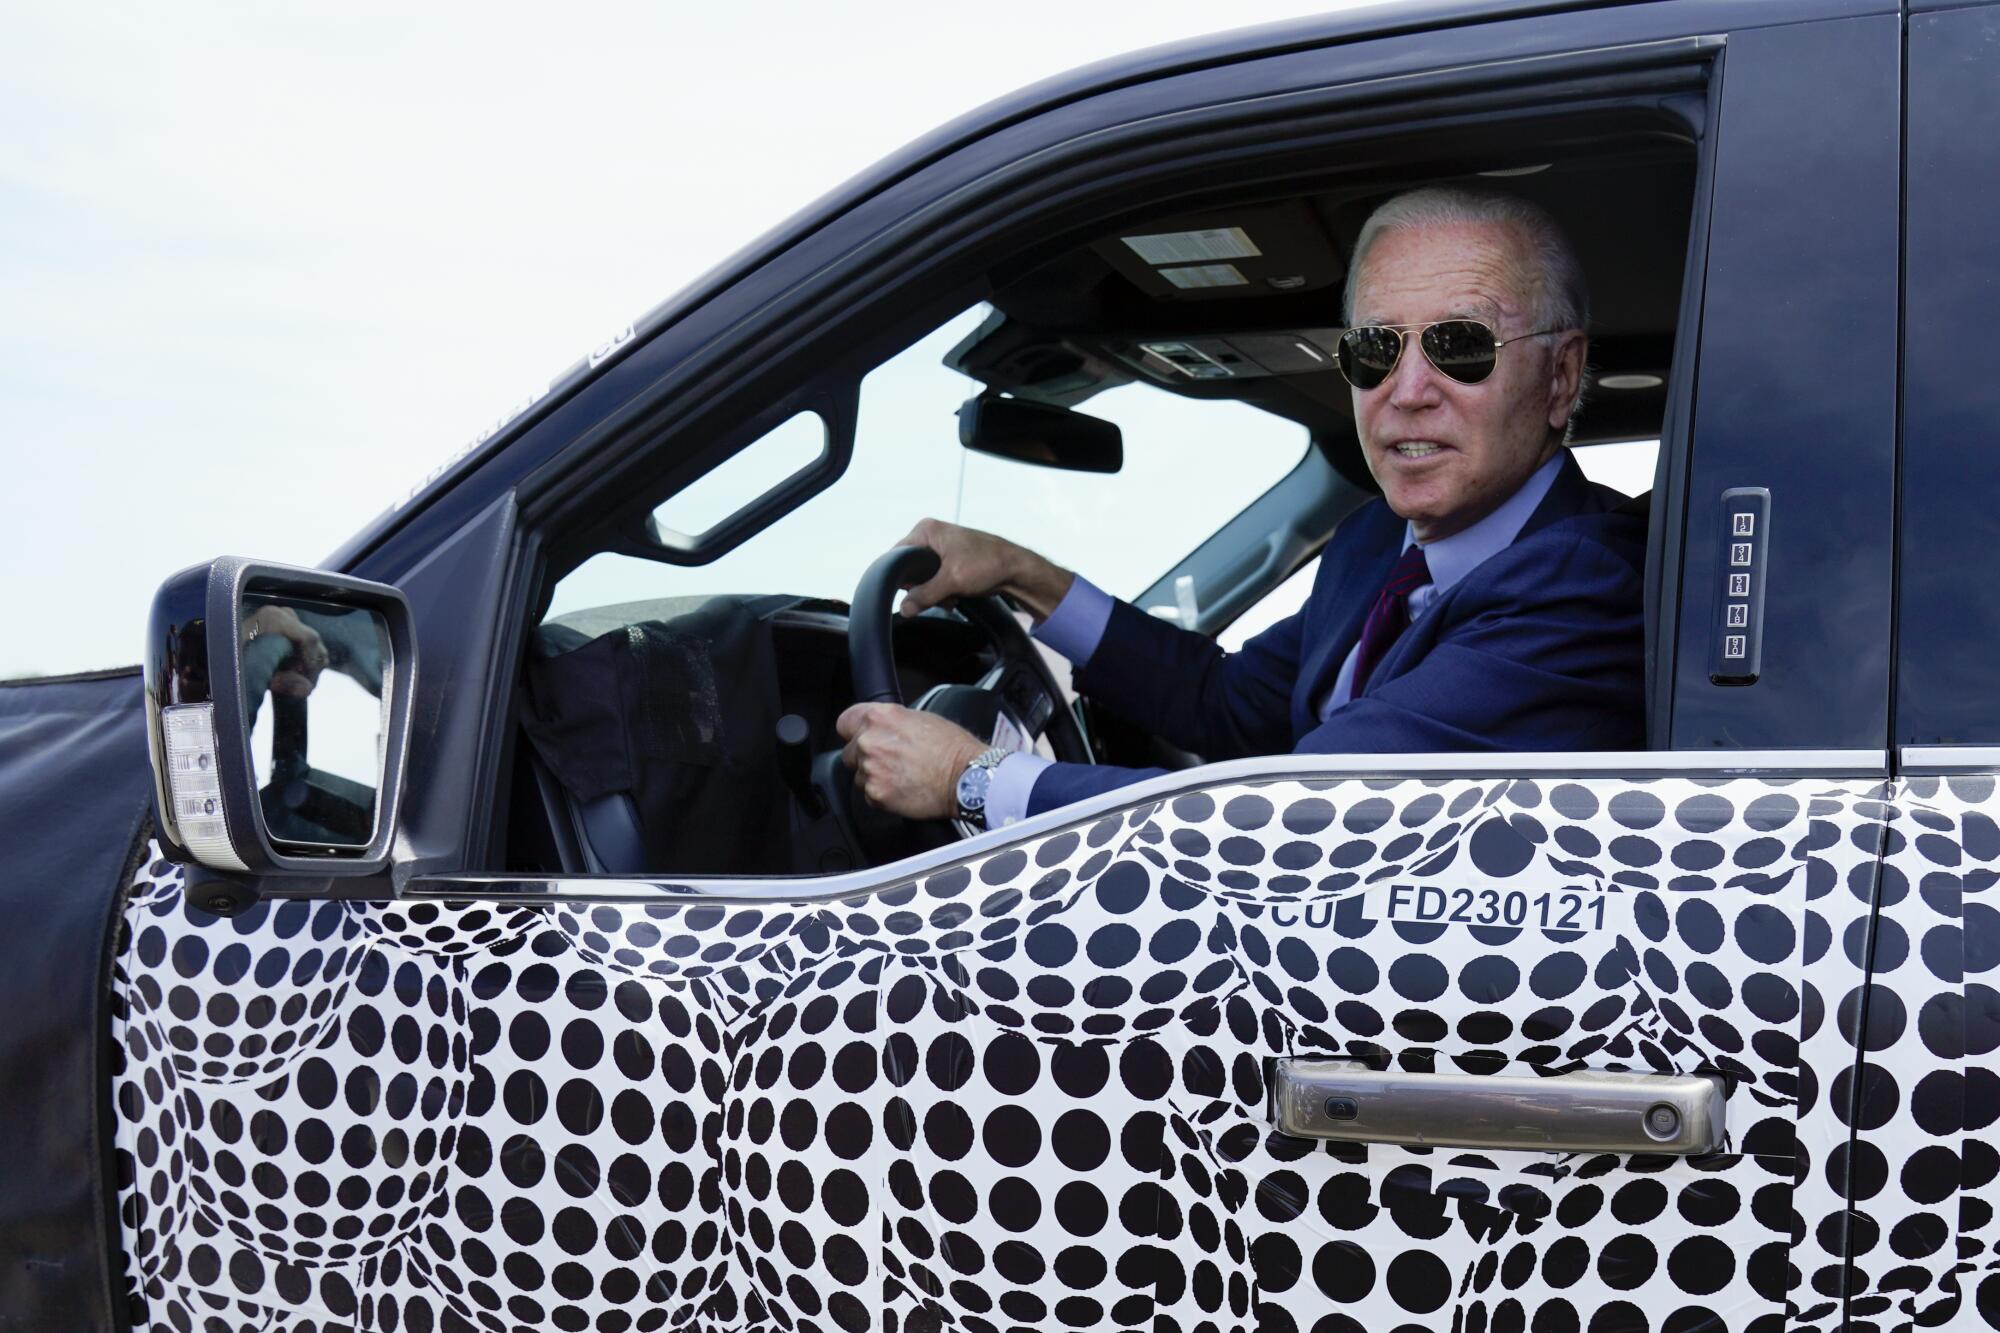 President Biden drives a pickup truck.